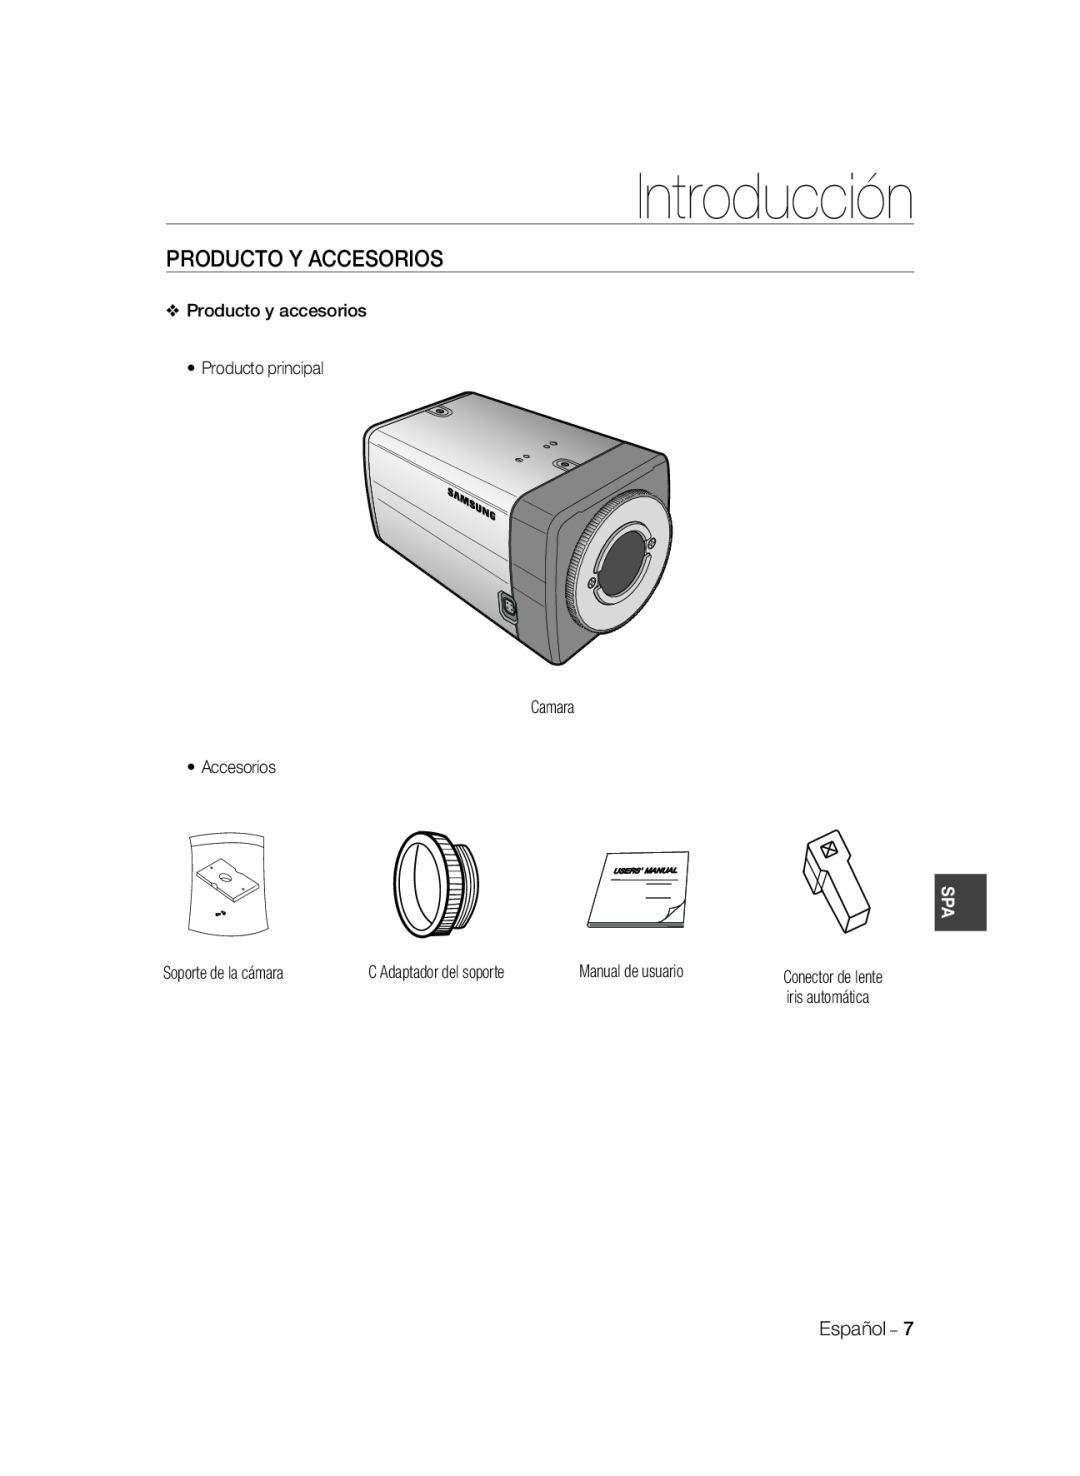 Samsung SCC-B2037P, SCC-B2337P manual Producto Y Accesorios, Introducción, iris automática 